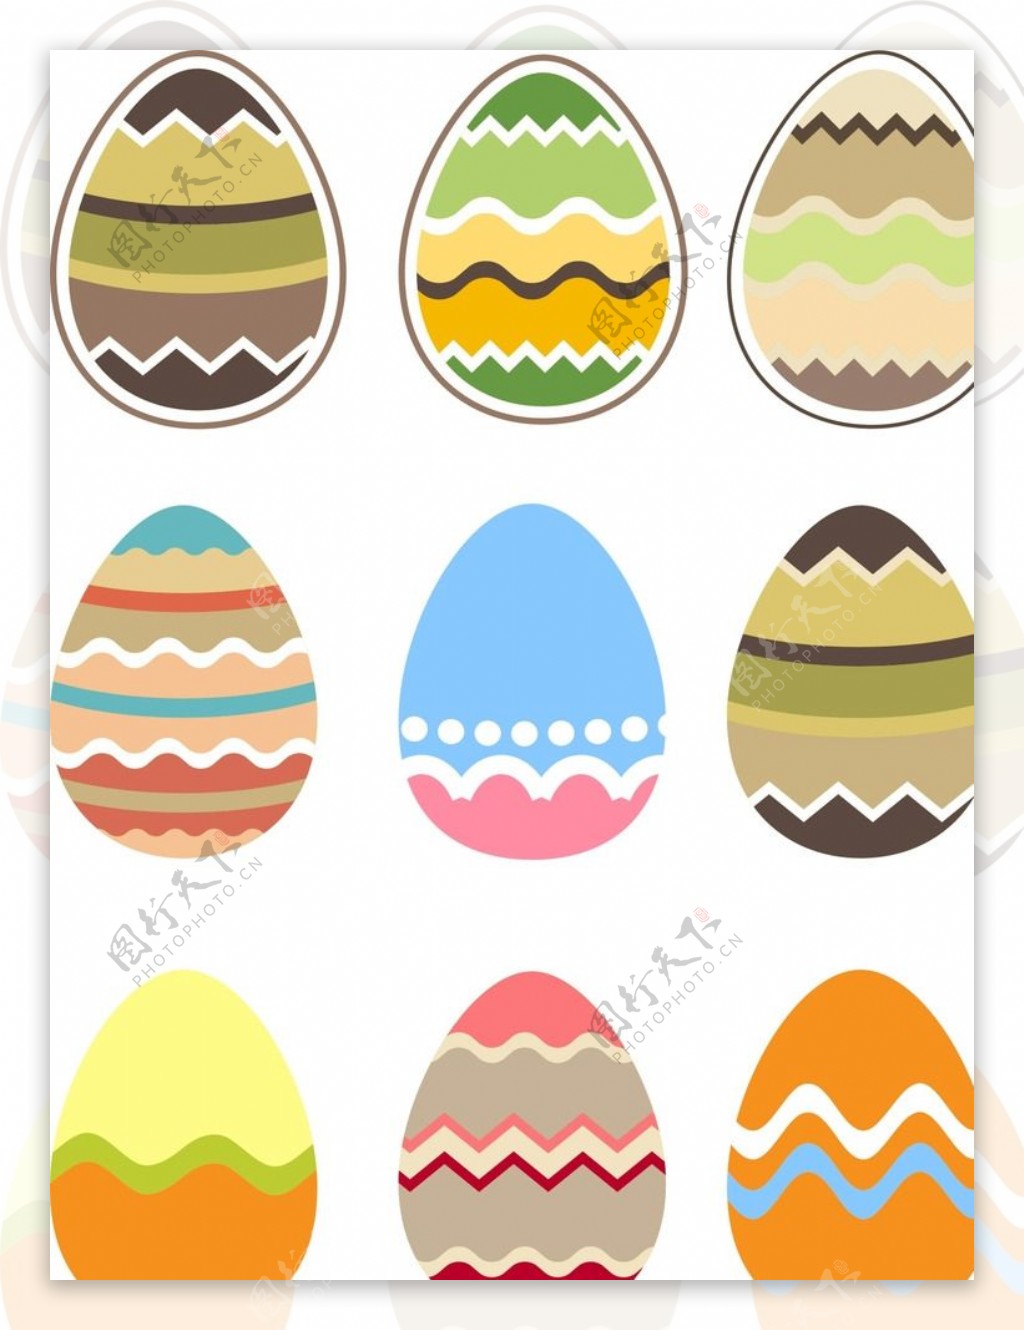 复活节手绘彩蛋图片